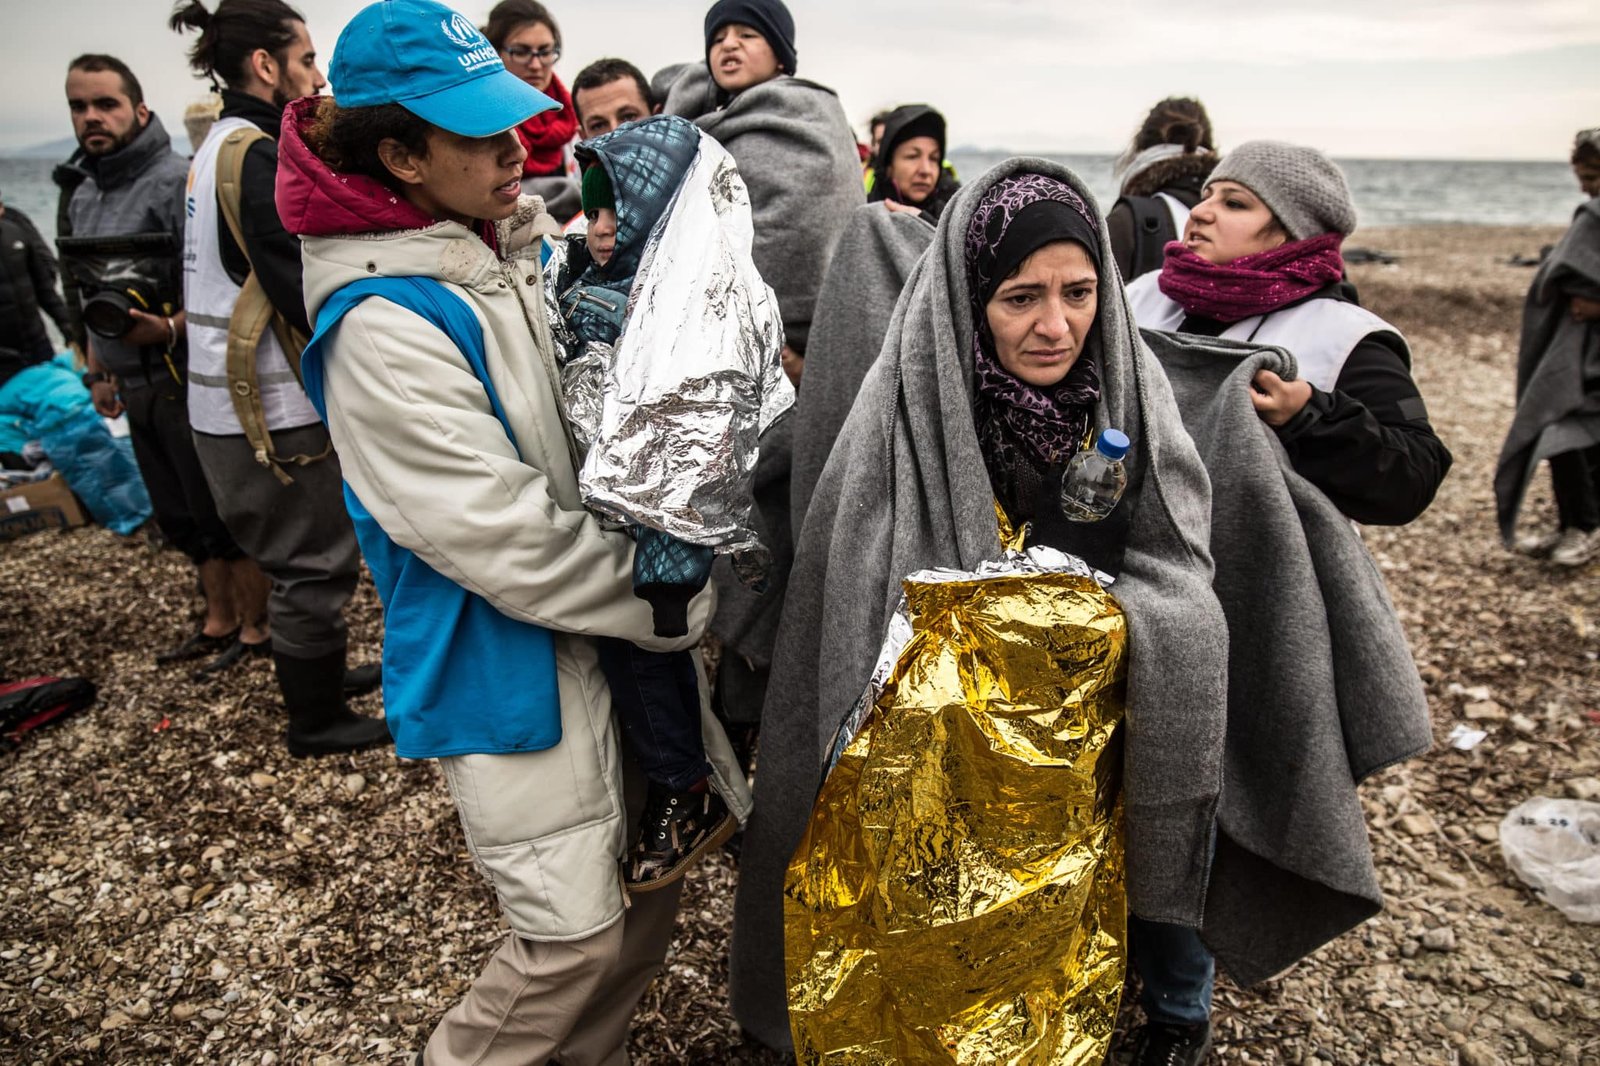 Refugiados recebem ajuda. Crédito: ACNUR, divulgação